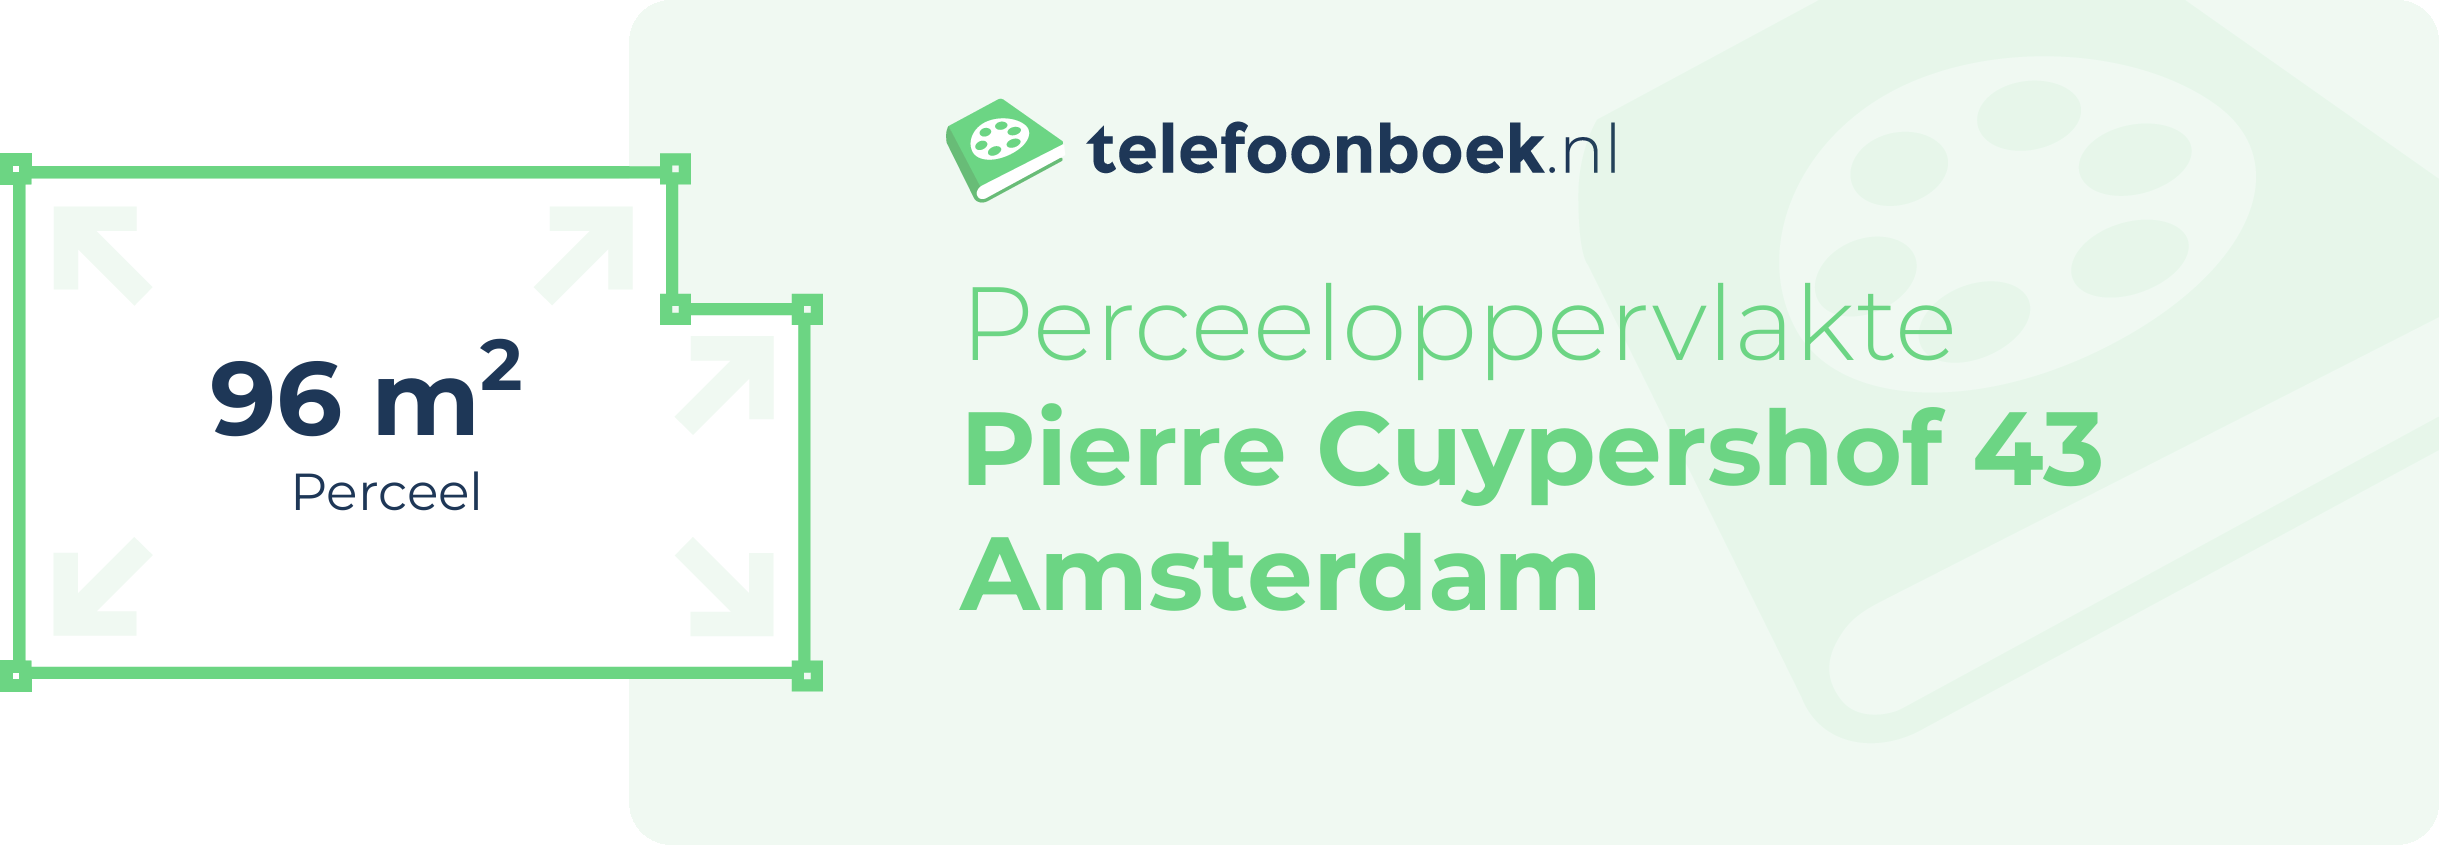 Perceeloppervlakte Pierre Cuypershof 43 Amsterdam